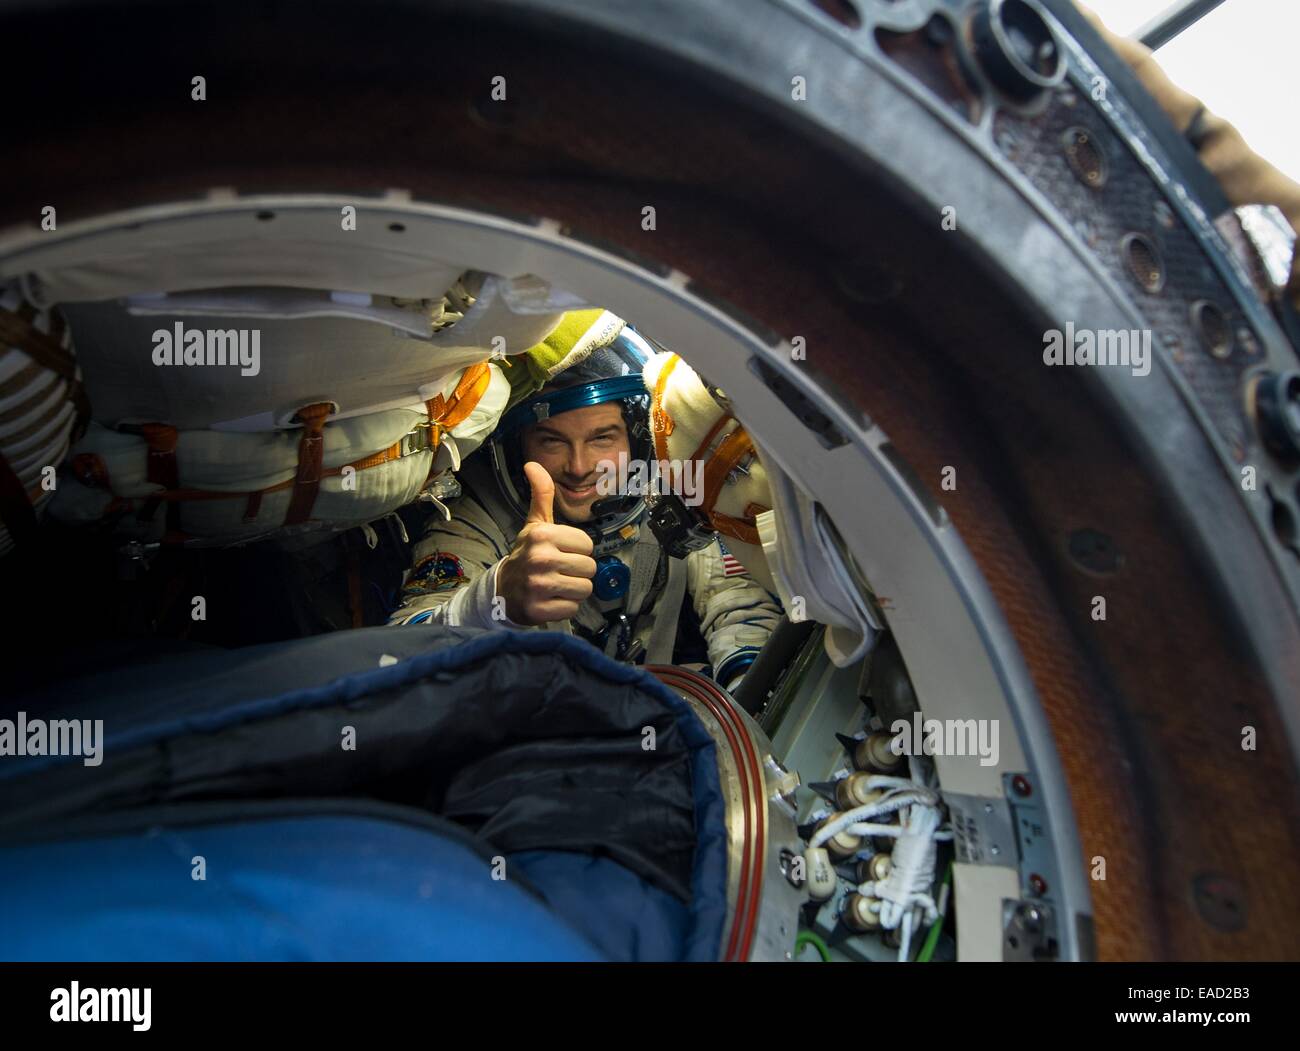 ISS-Expedition-41-NASA-Astronaut Reid Wiseman, gibt ein Daumen hoch Momente nach der Landung in der Sojus TMA - 13M-Kapsel in einer abgelegenen Gegend 10. November 2014 in der Nähe von Arkalyk Kasachstan. Surajew, Wiseman und Gerst Rückkehr zur Erde nach mehr als fünf Monate an Bord der internationalen Raumstation ISS, wo sie als Mitglieder der Expedition 40 und 41 Mannschaften dienten. Stockfoto